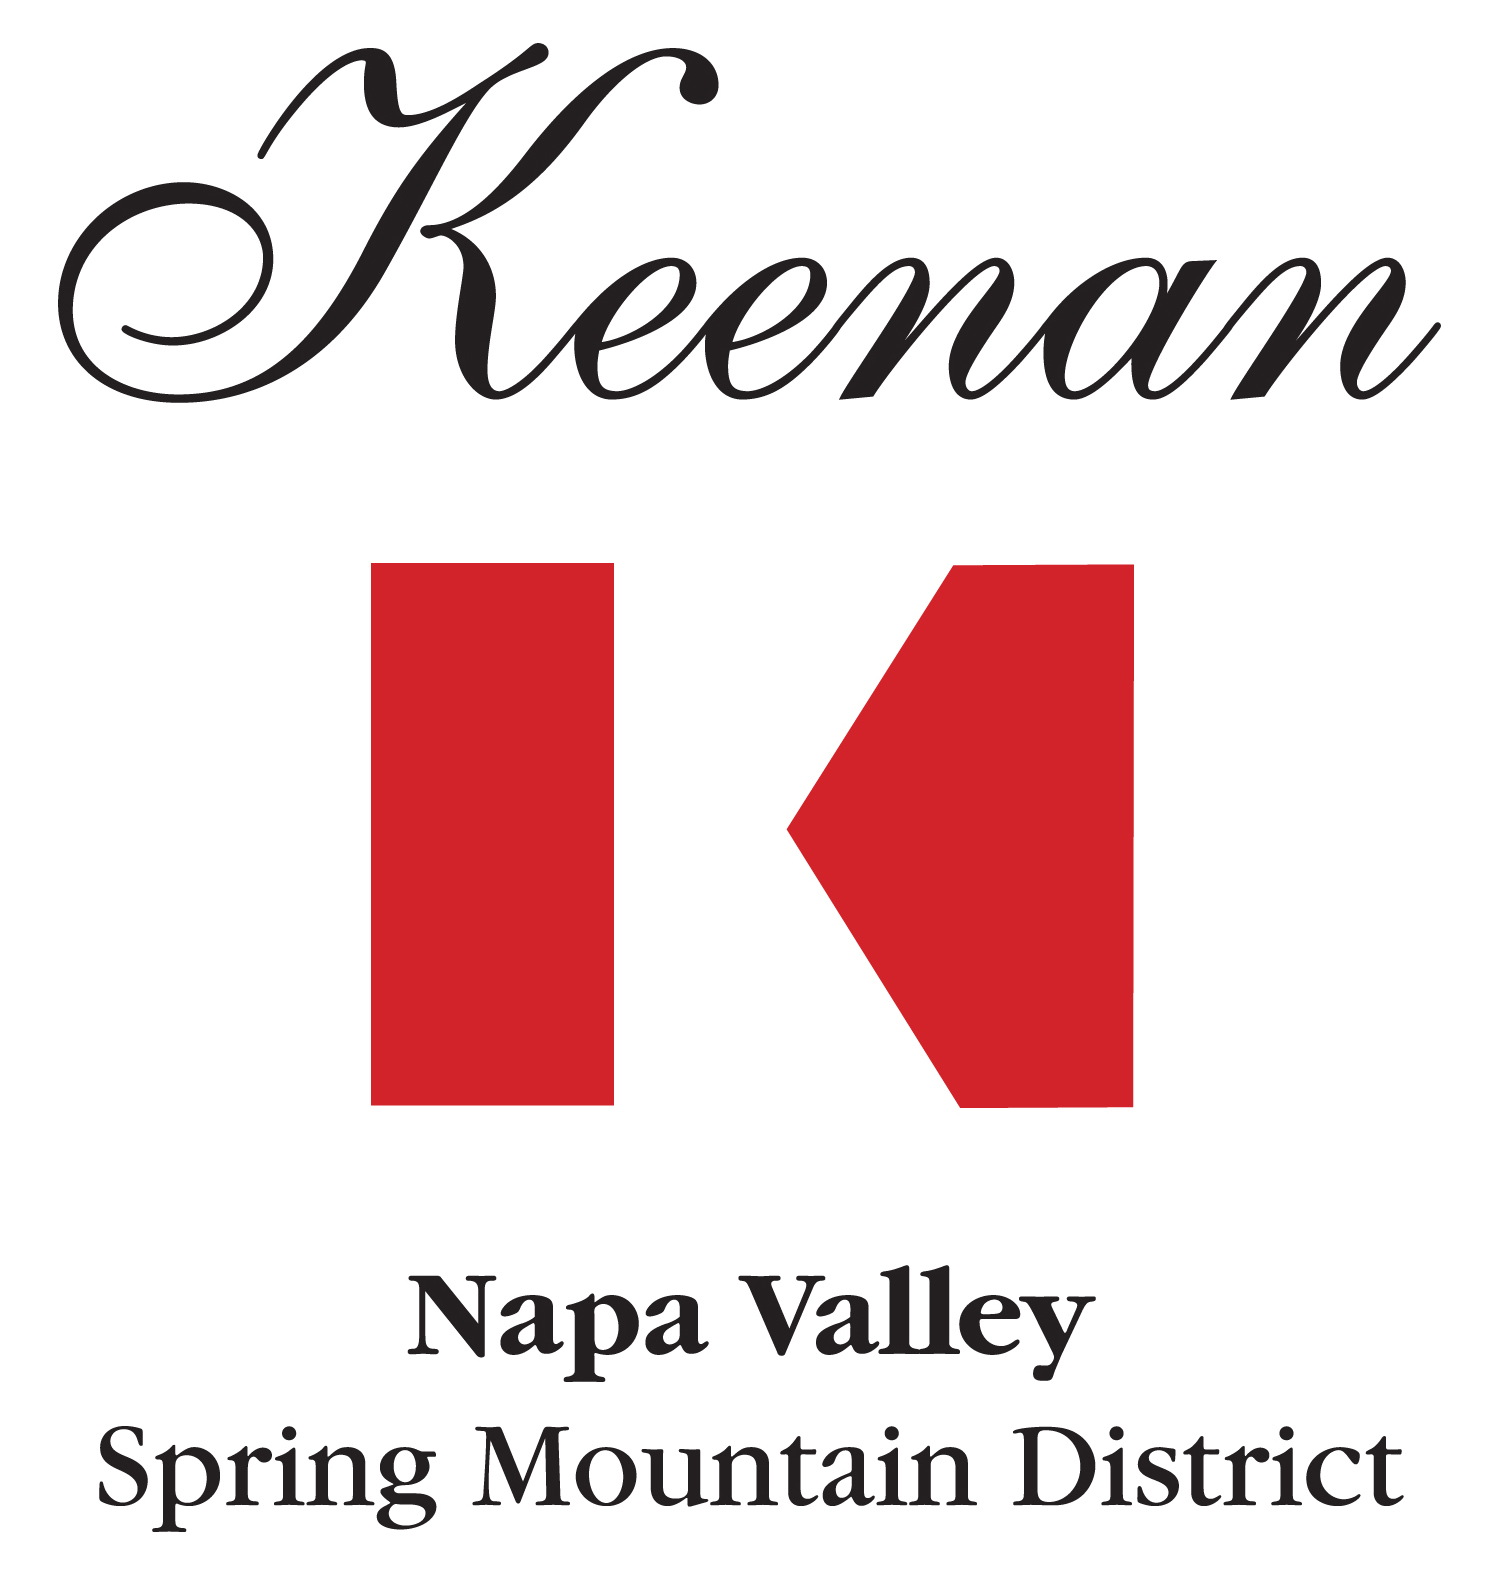 keenan-logo